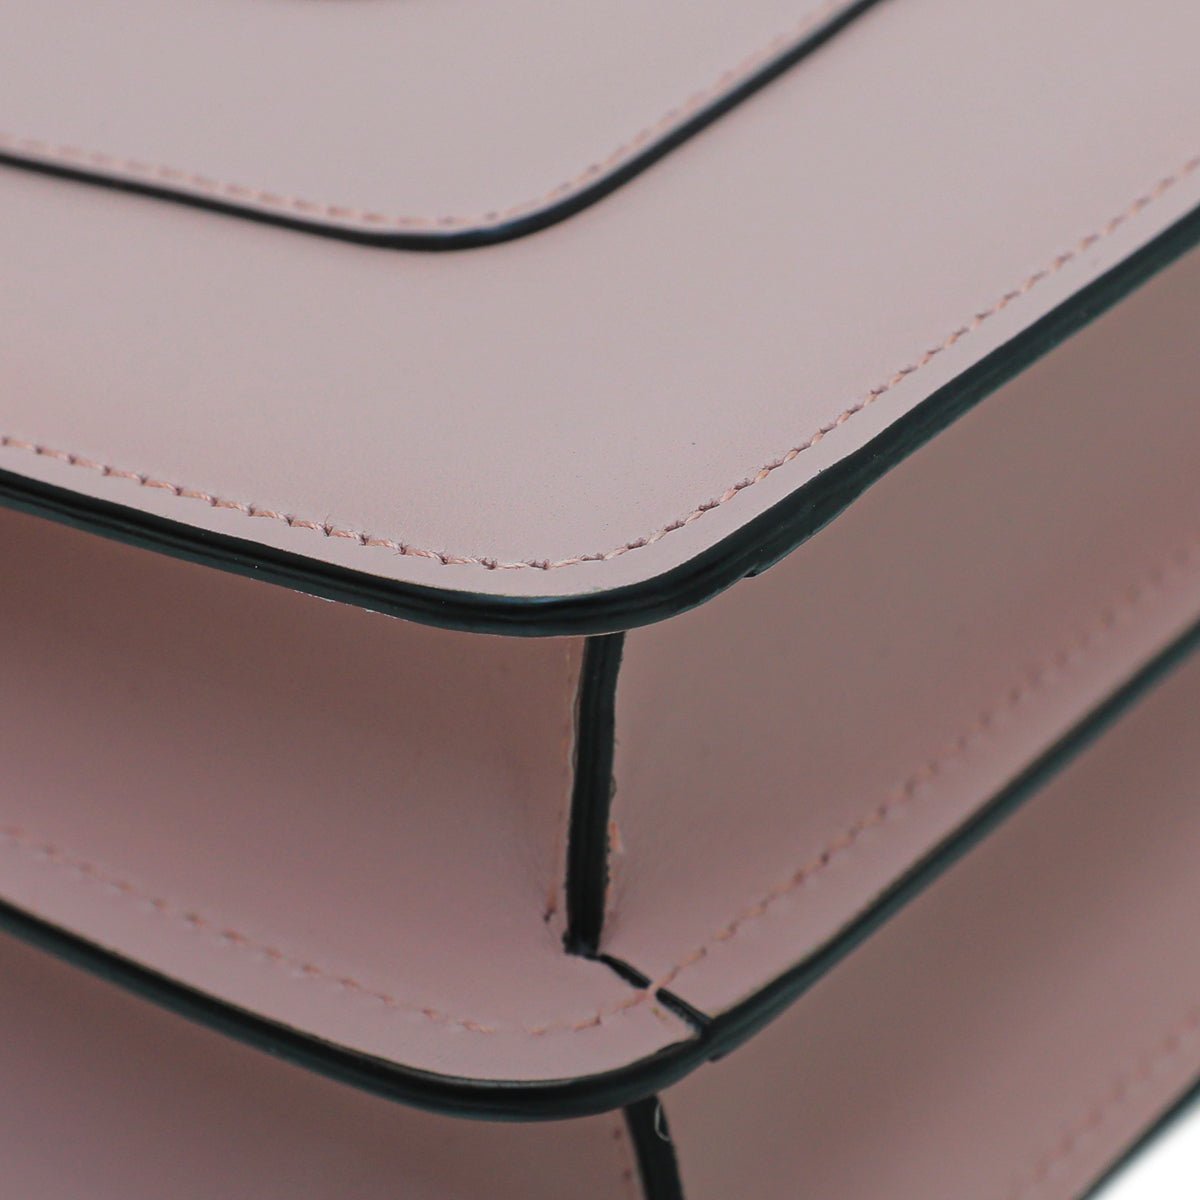 Bvlgari - Bvlgari Light Pink Serpenti Forever Shoulder Bag | The Closet